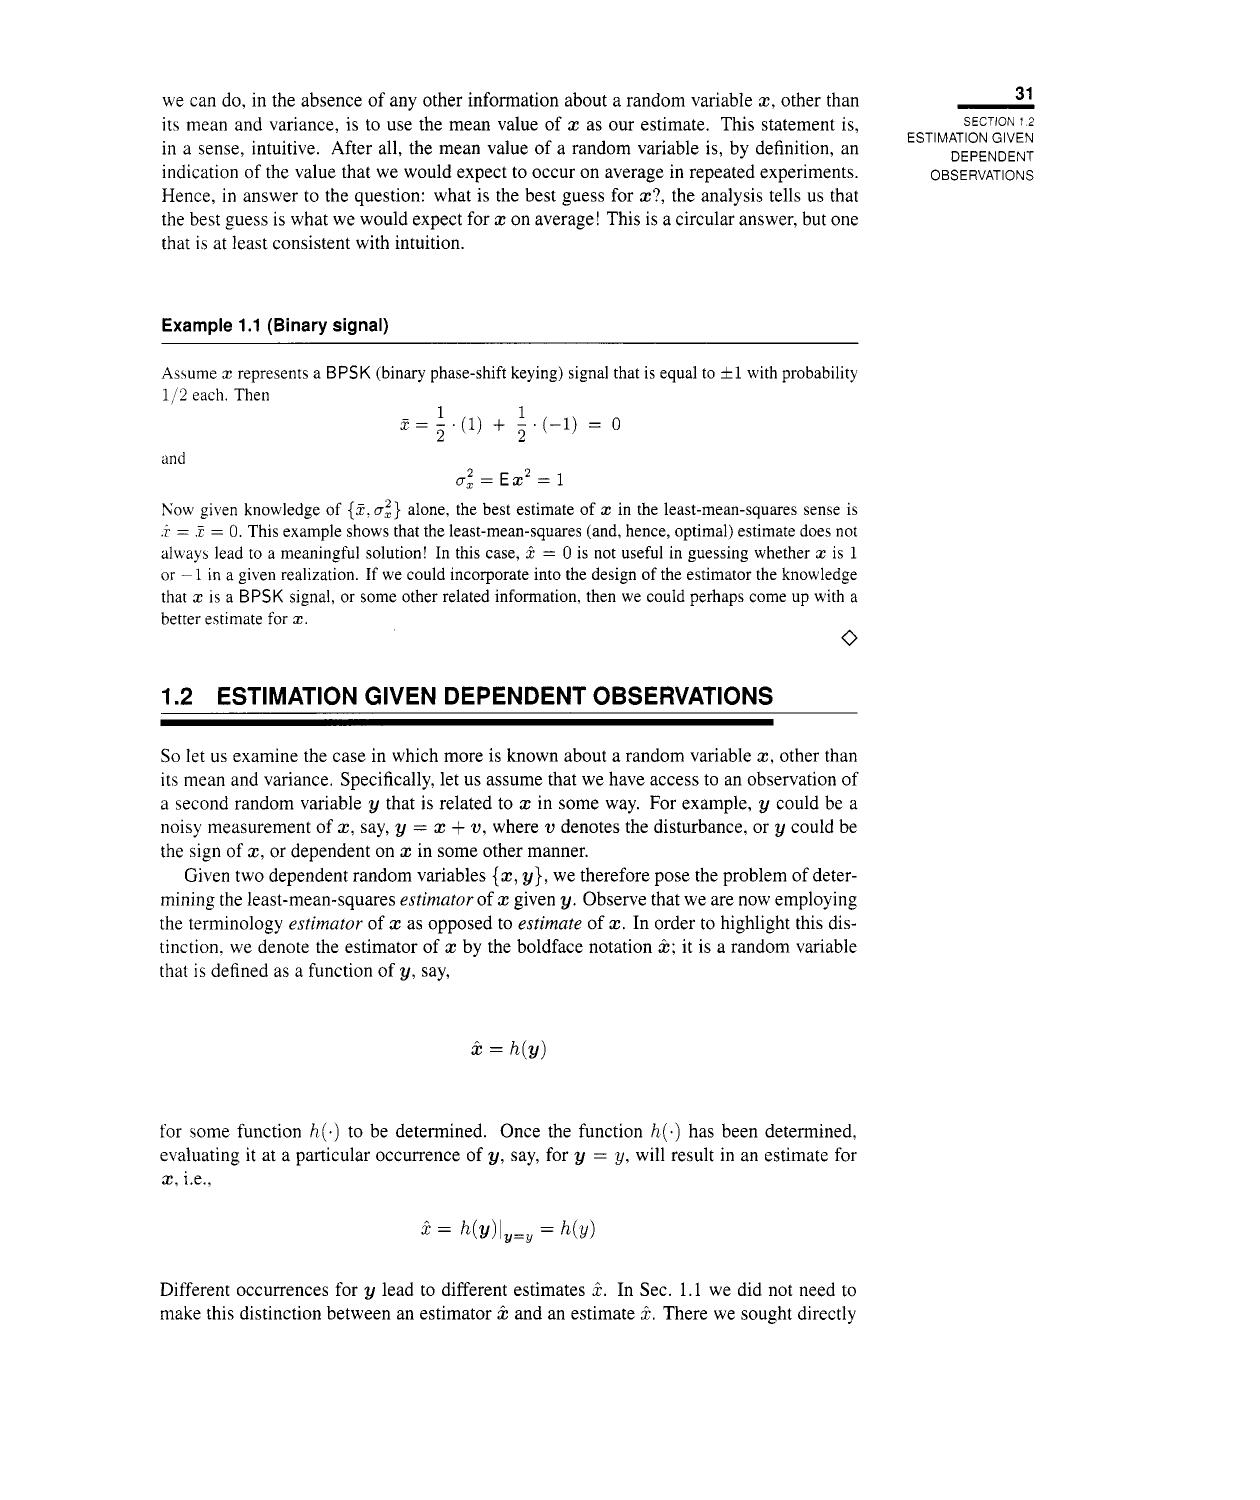 1.2 Estimation Given Dependent Observations